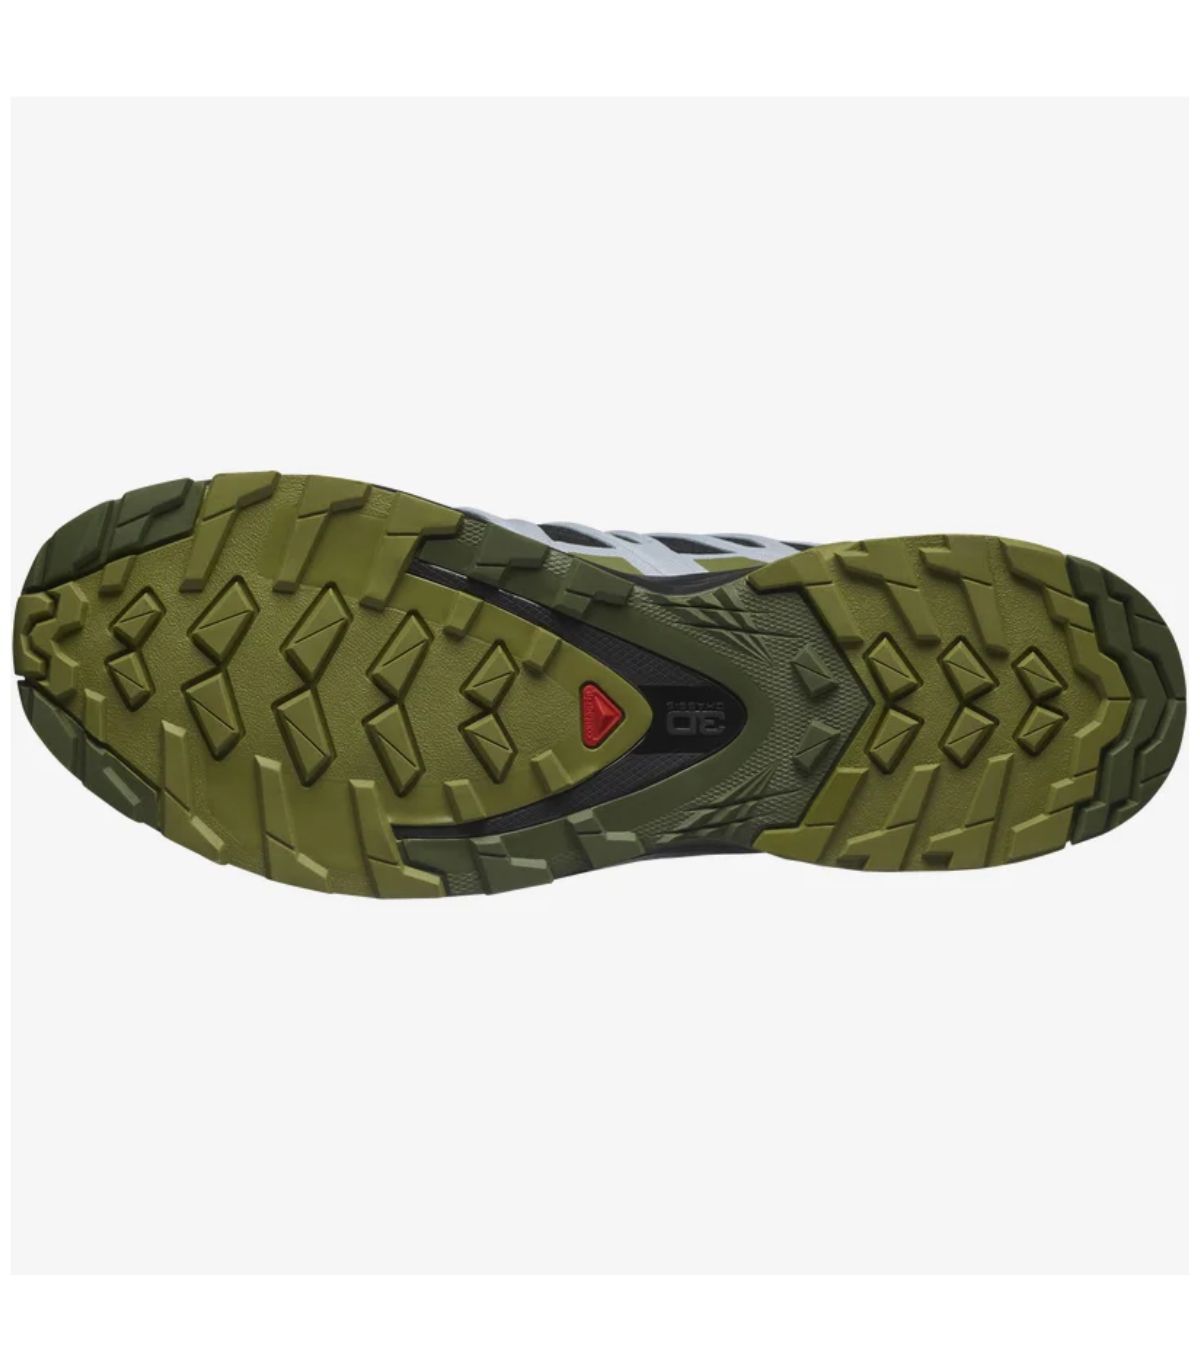 Zapatillas de trail running unisex XA PRO 3D v8 GTX Salomon